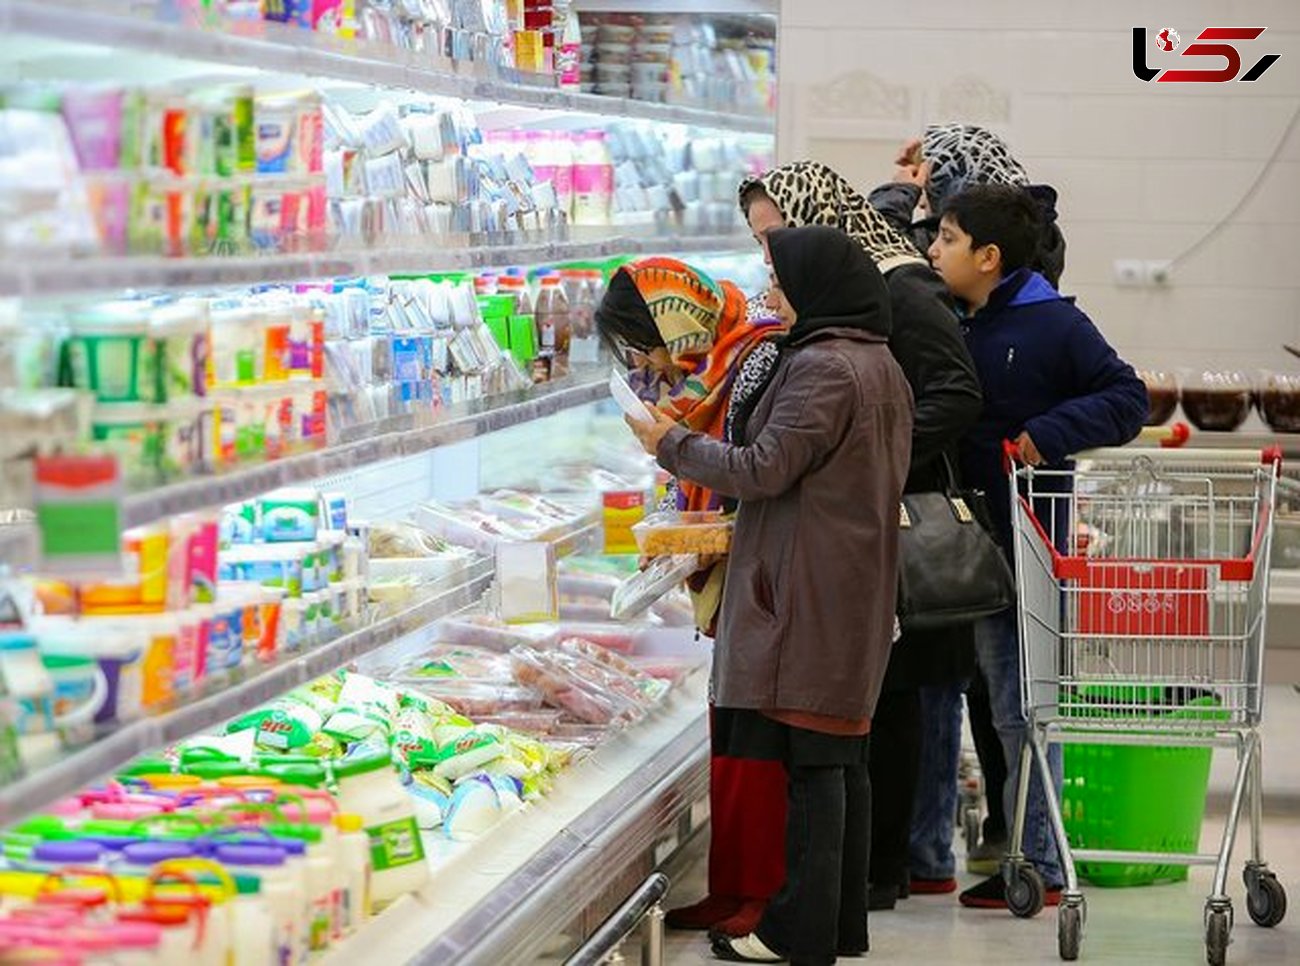  سوپر مارکت ها چه اصول بهداشتی را باید رعایت کنند؟ / در دوره کرونایی 